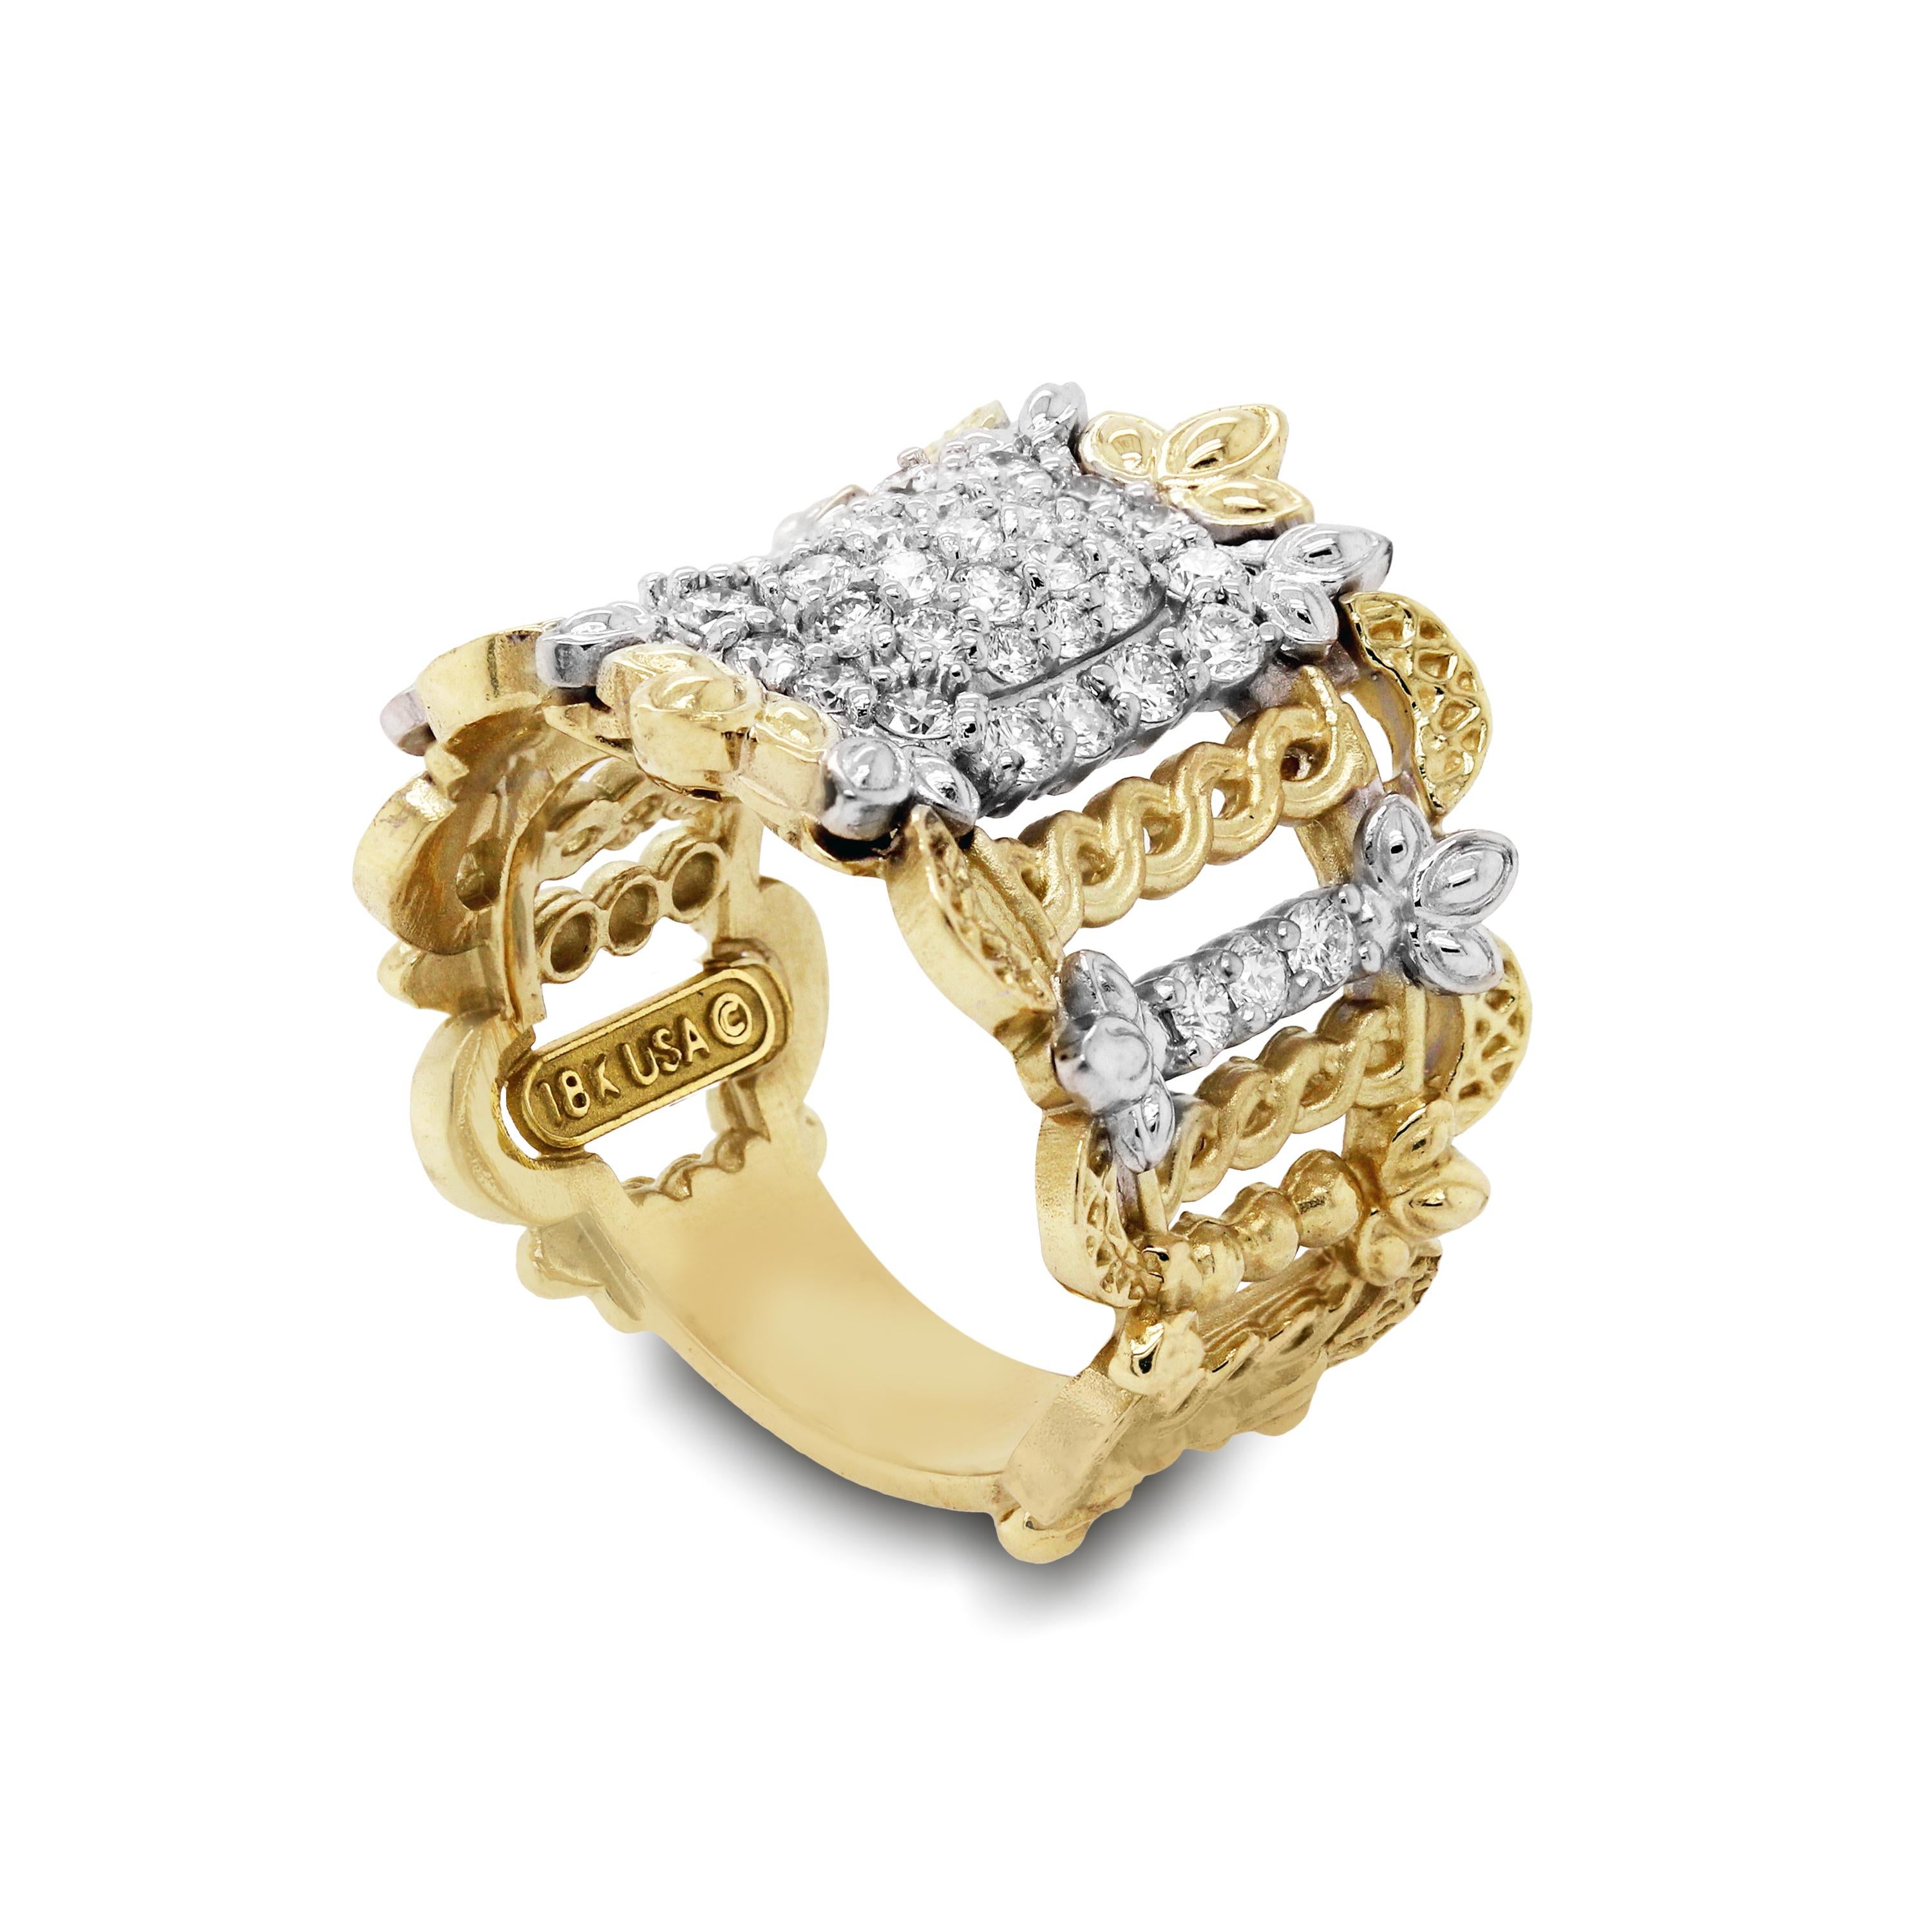 Stambolian 18K Gelb Weißgold Pavé Set Diamond Wide Band Ring

Dieses einmalige Meisterwerk bietet eines der schönsten und einzigartigsten Ringdesigns mit unglaublicher Liebe zum Detail

0,90 Karat weiße Diamanten der Farbe G und Reinheit VS

Der